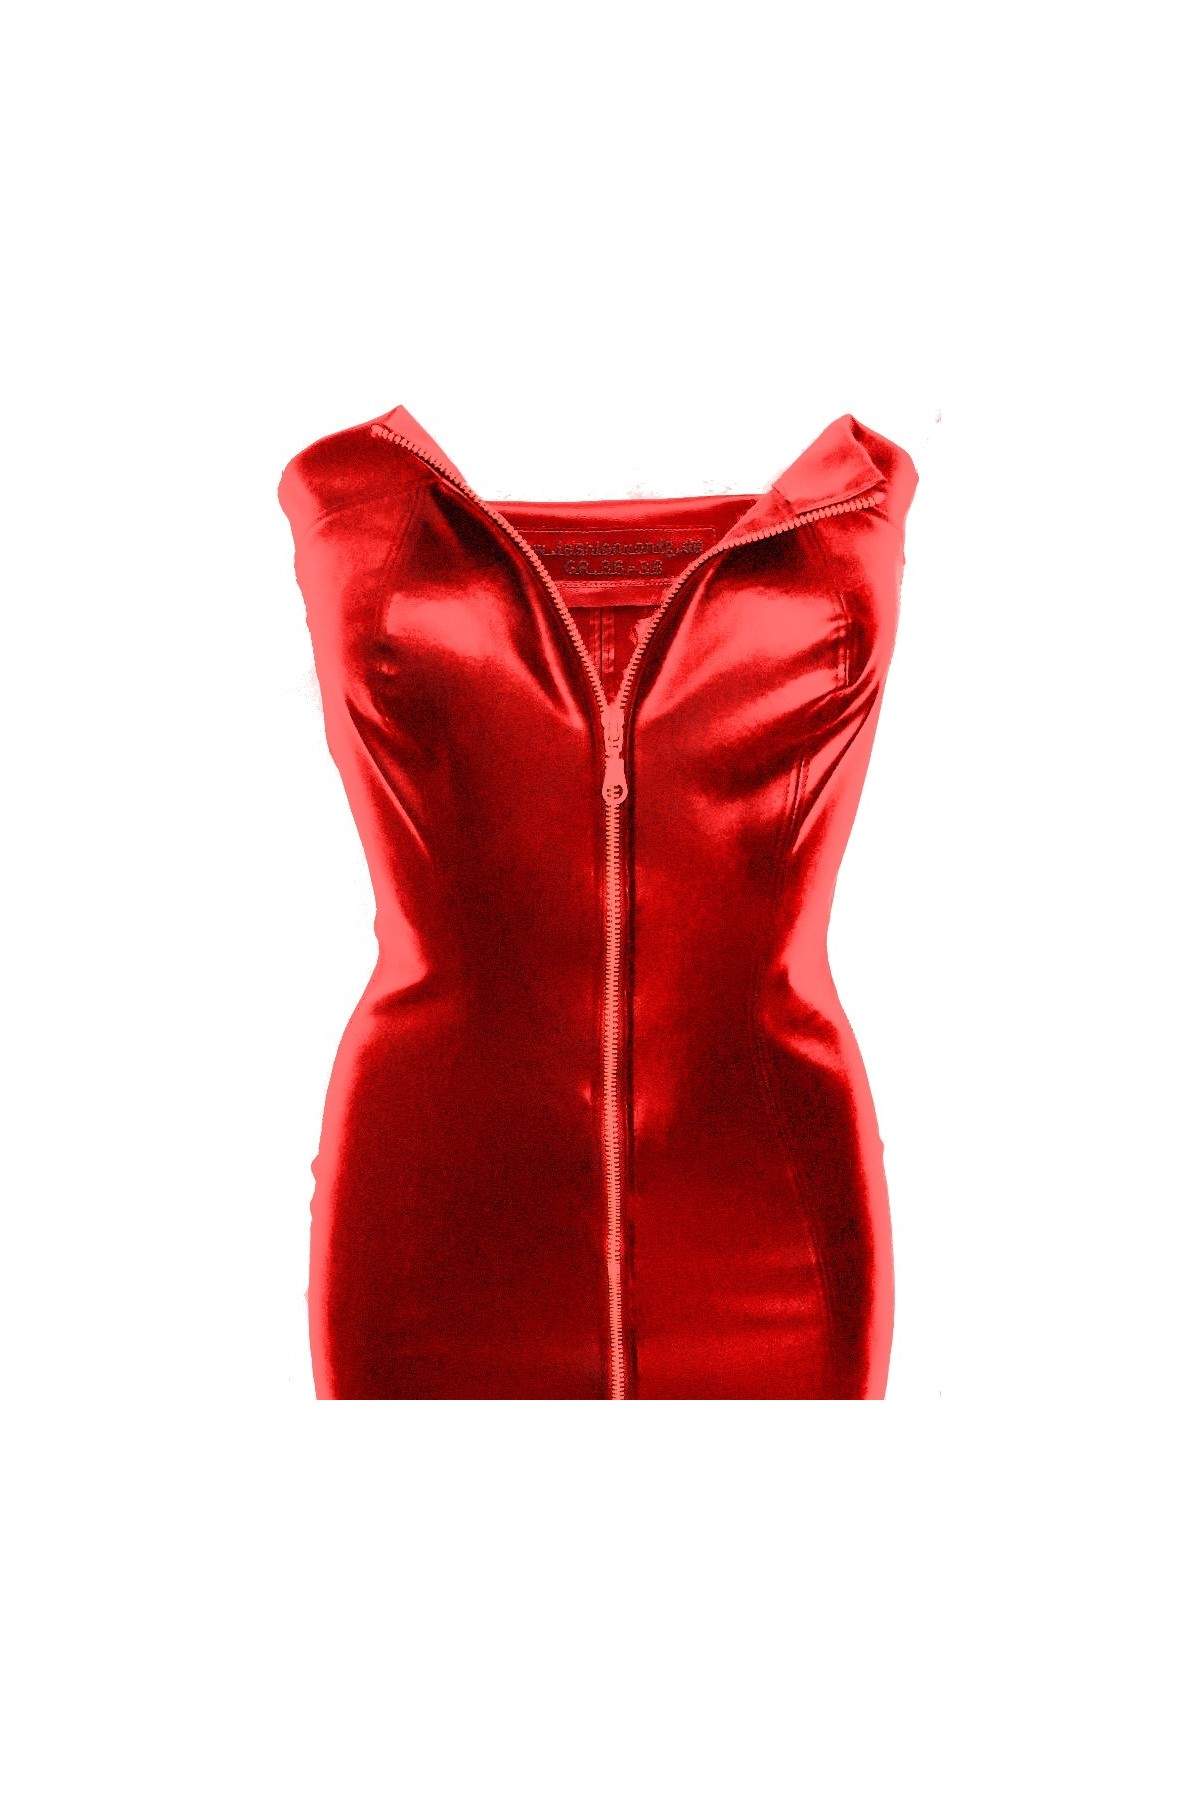 Leder Kleid rot Kunstleder - 